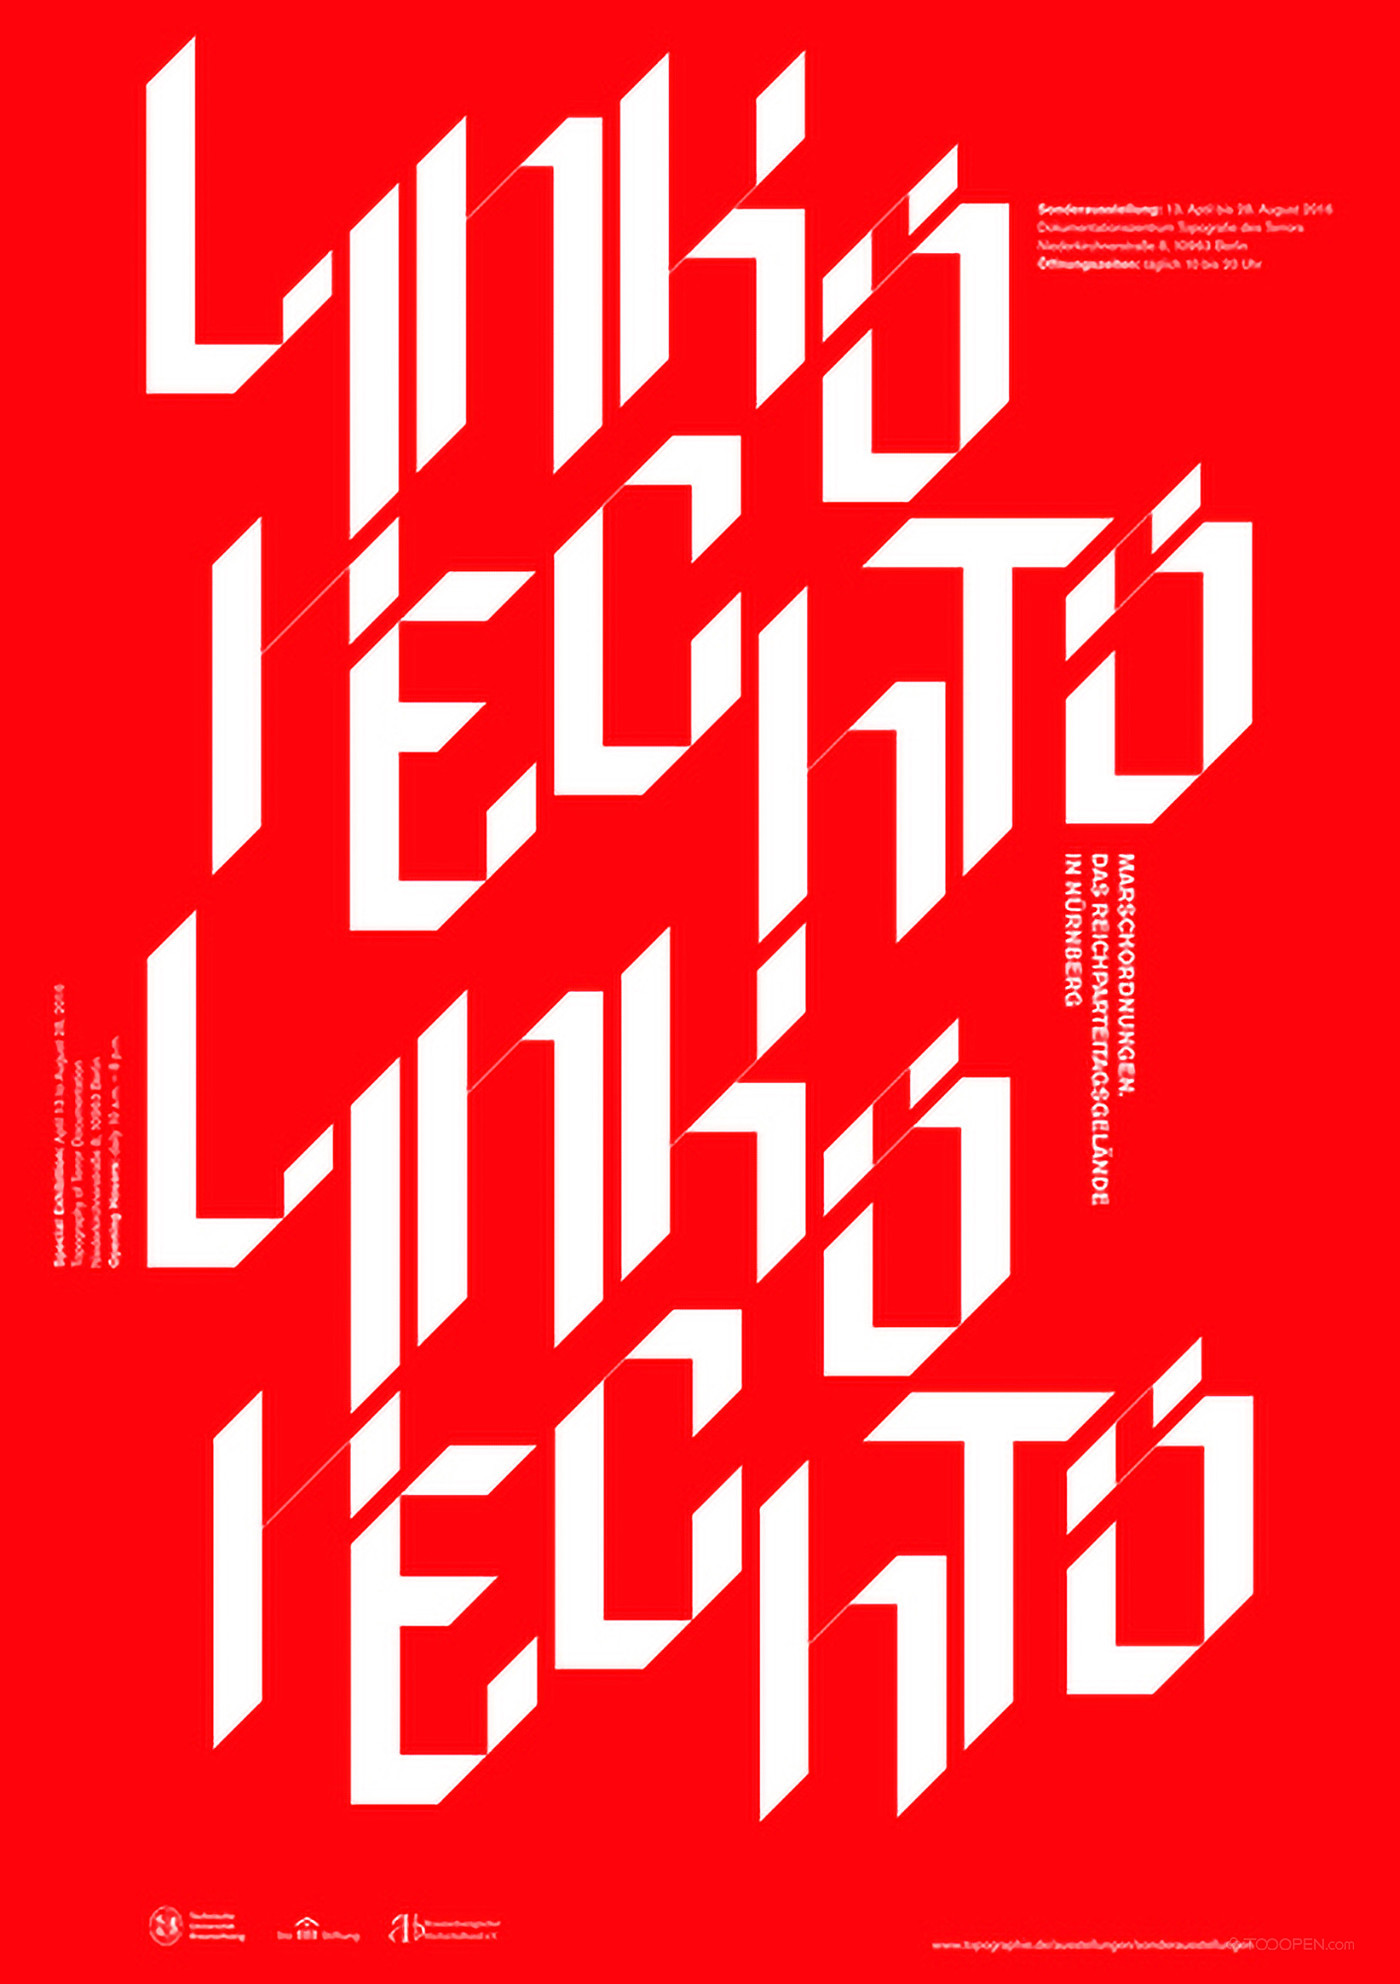 国外创意字体艺术海报平面设计欣赏-02